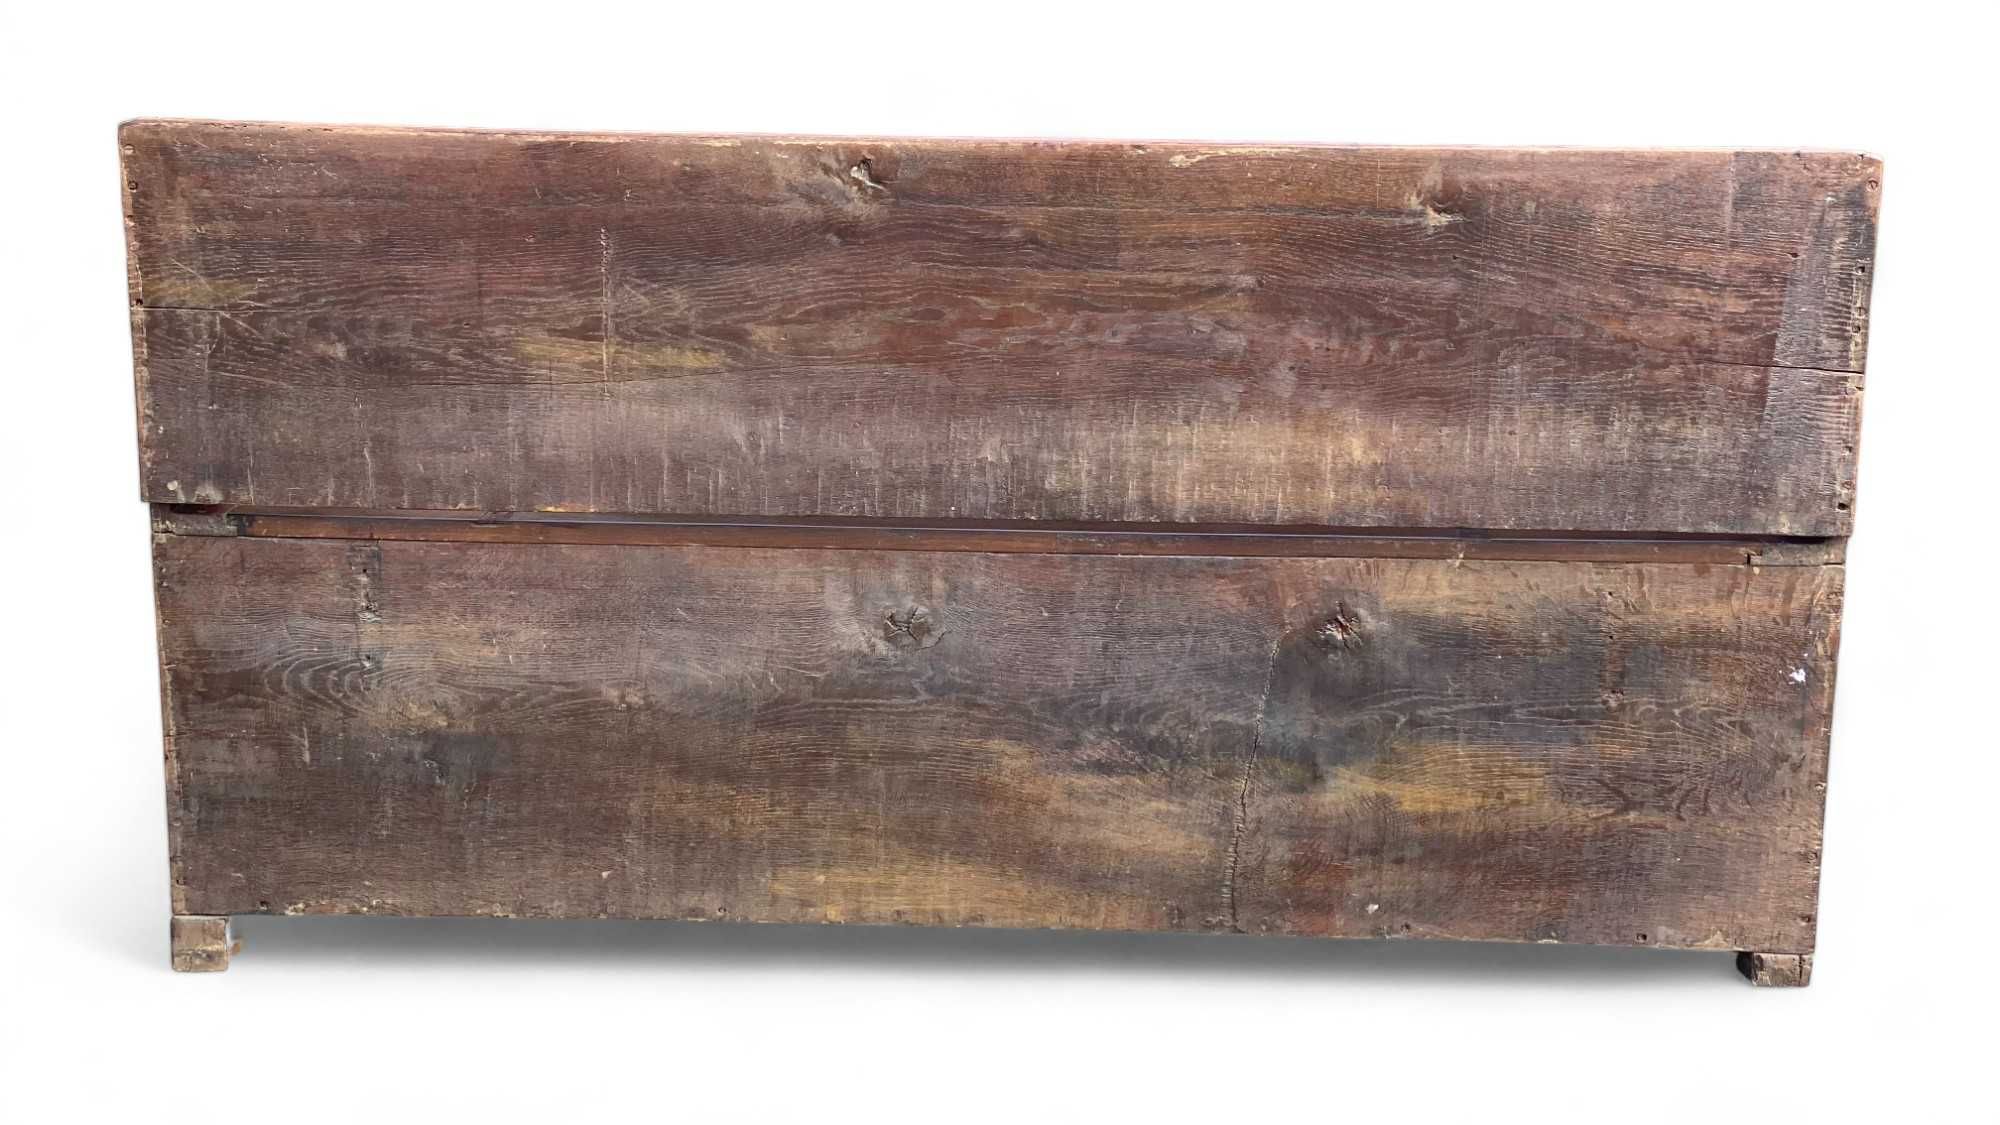 Stara rzeźbiona ława, drewniana ławka ze schowkiem, skrzynia siedzisko